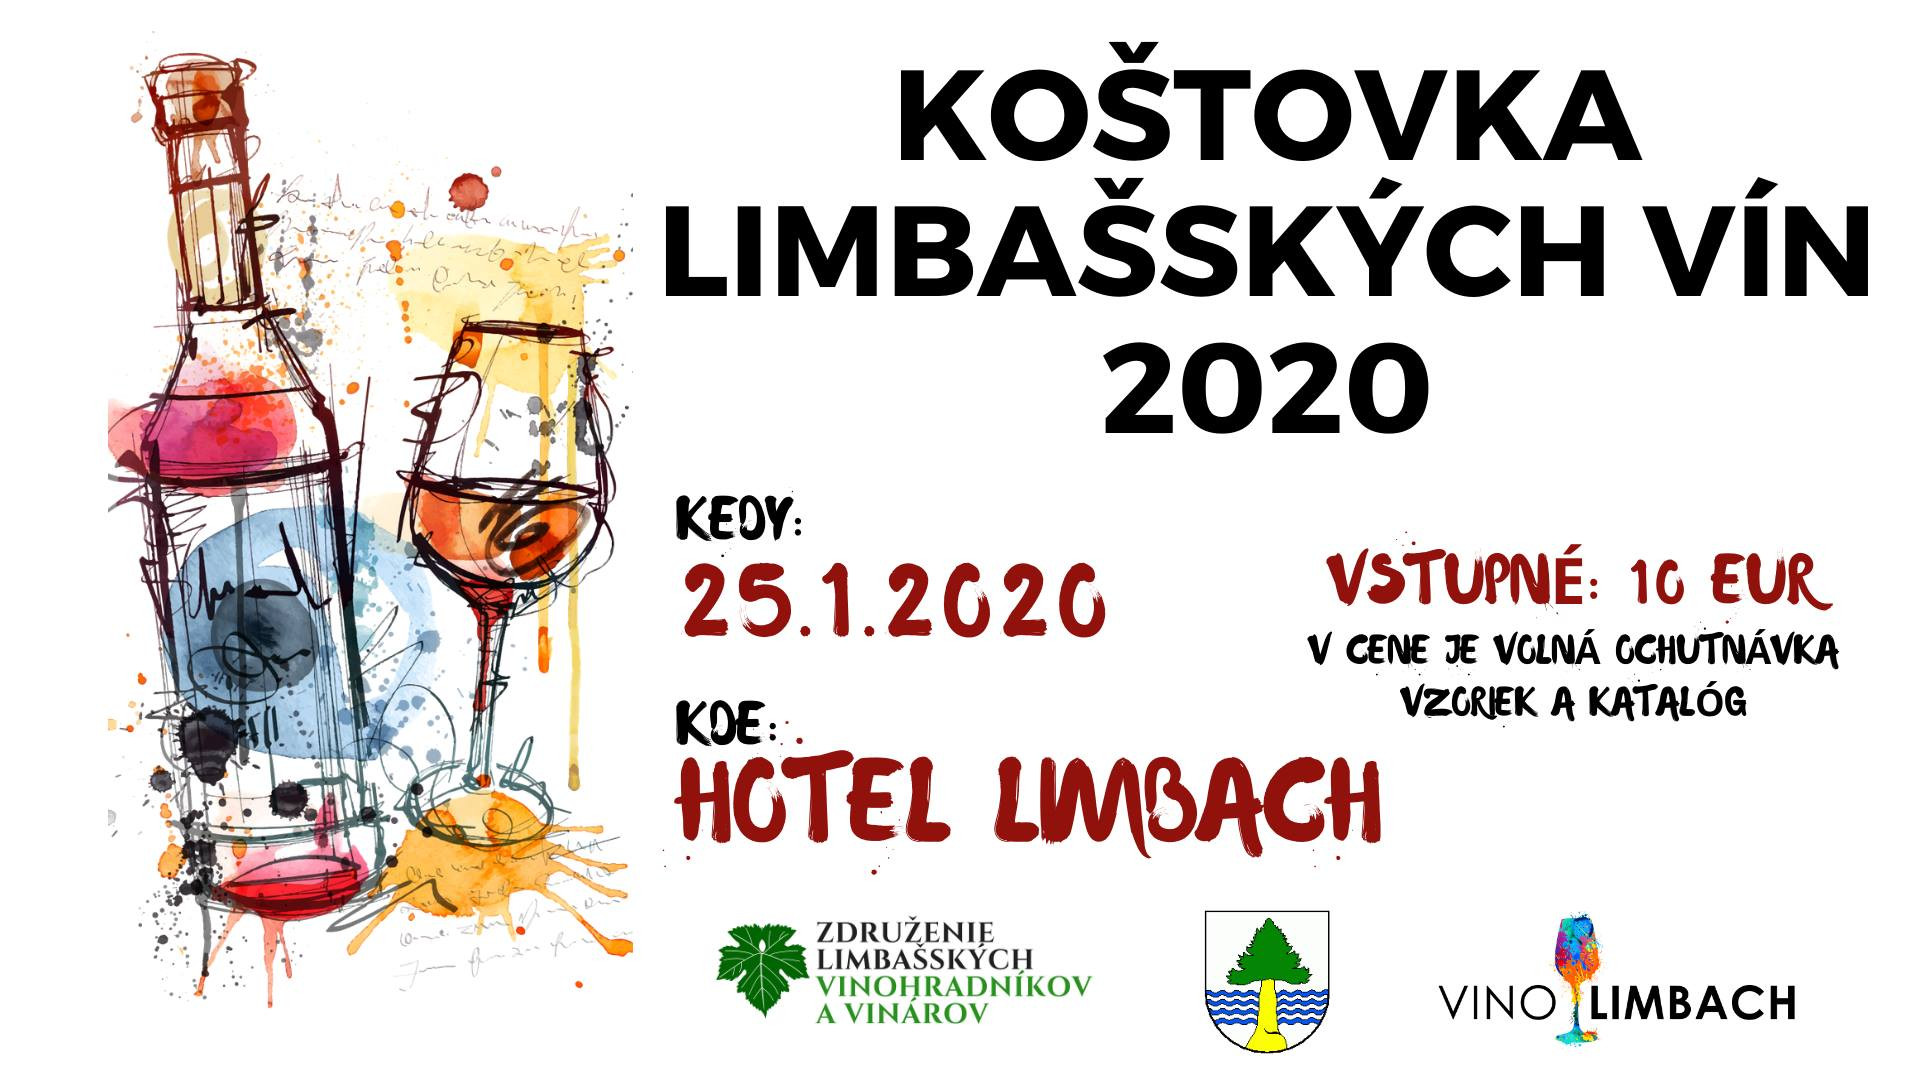 Koštovka limbašských vín 2020